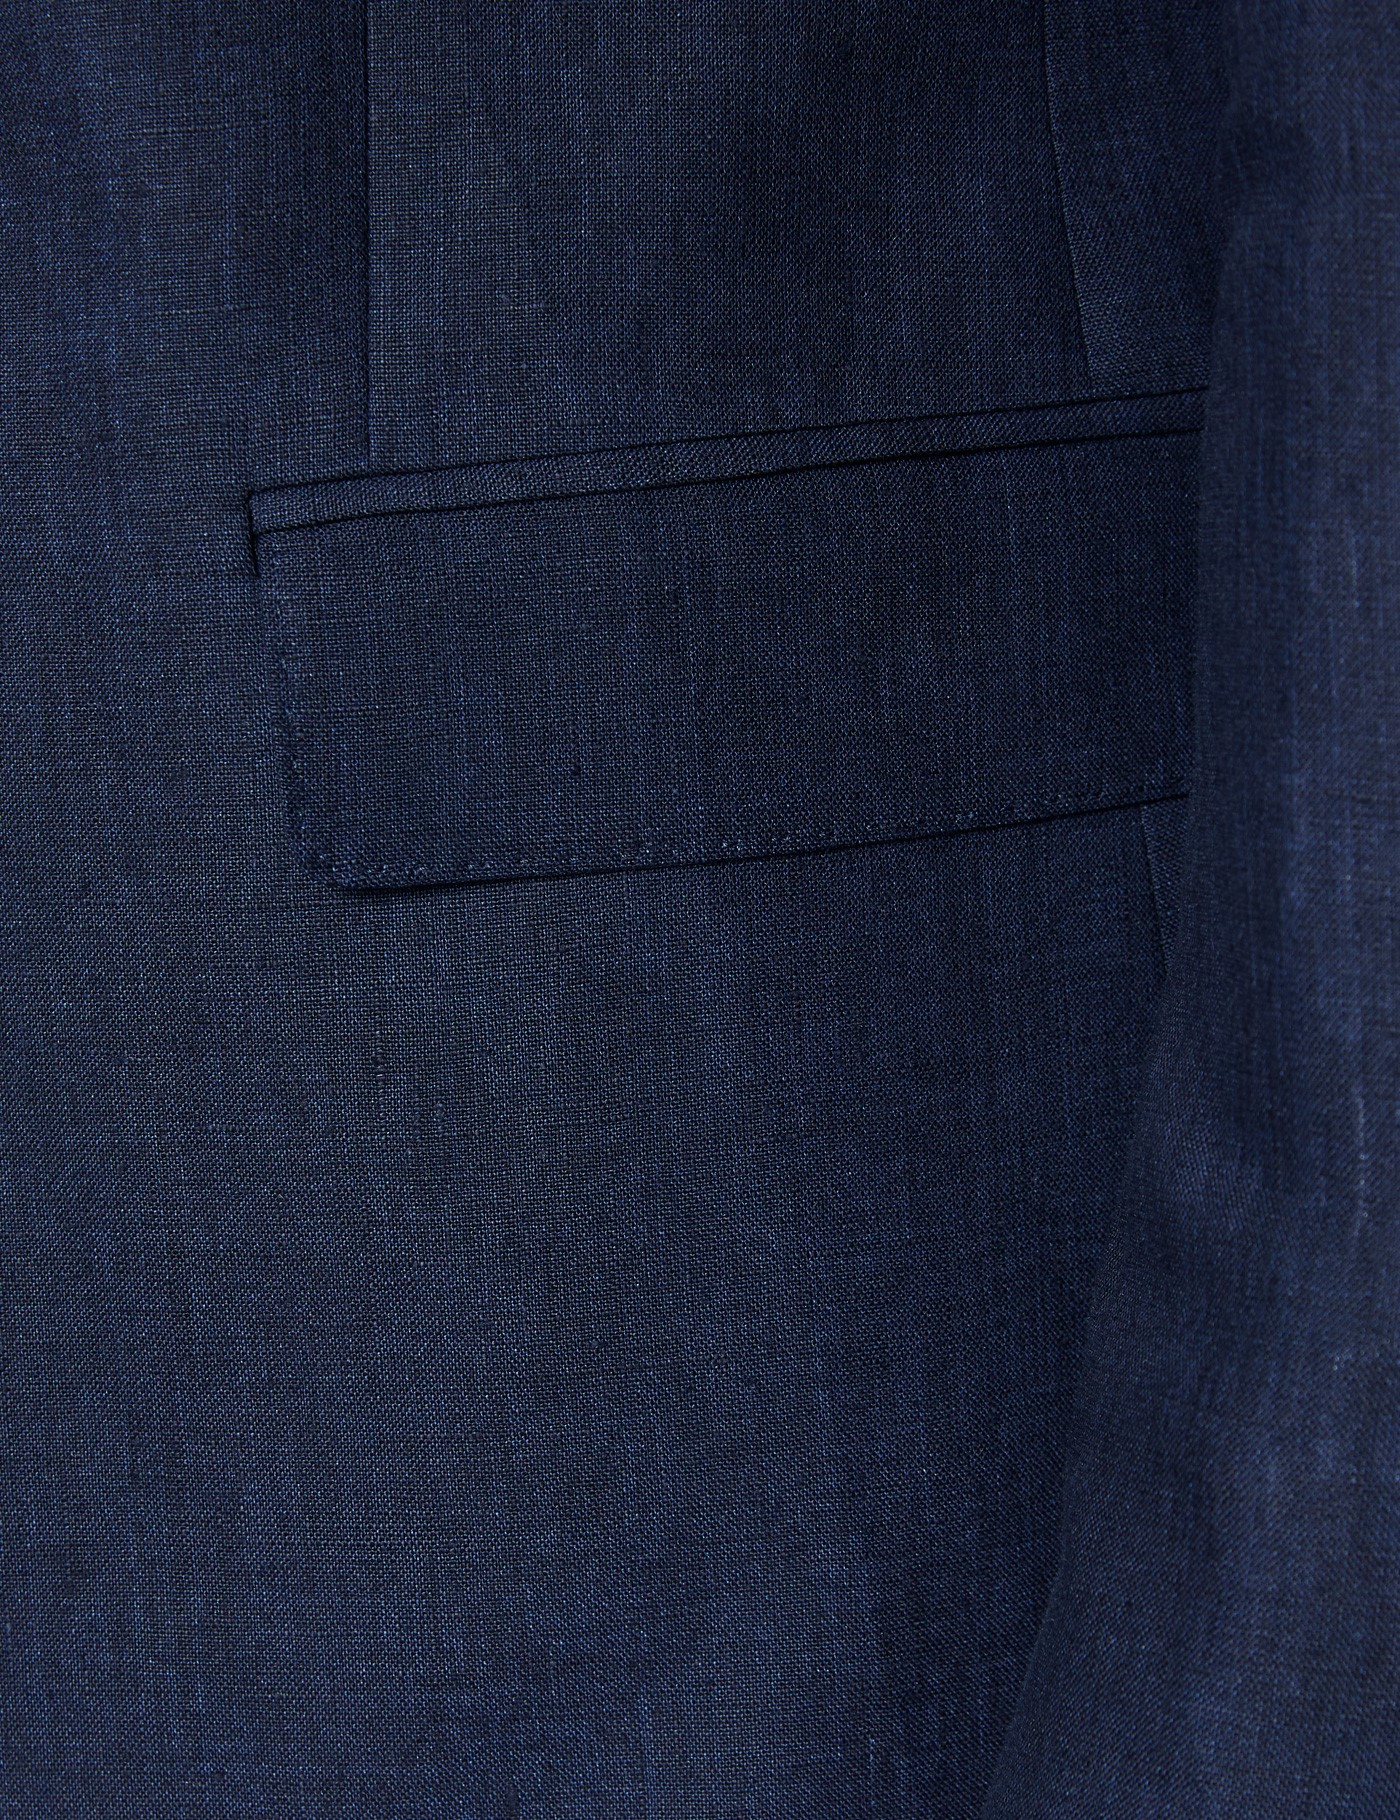 Men's Navy Linen Slim Fit Suit Jacket | Hawes & Curtis